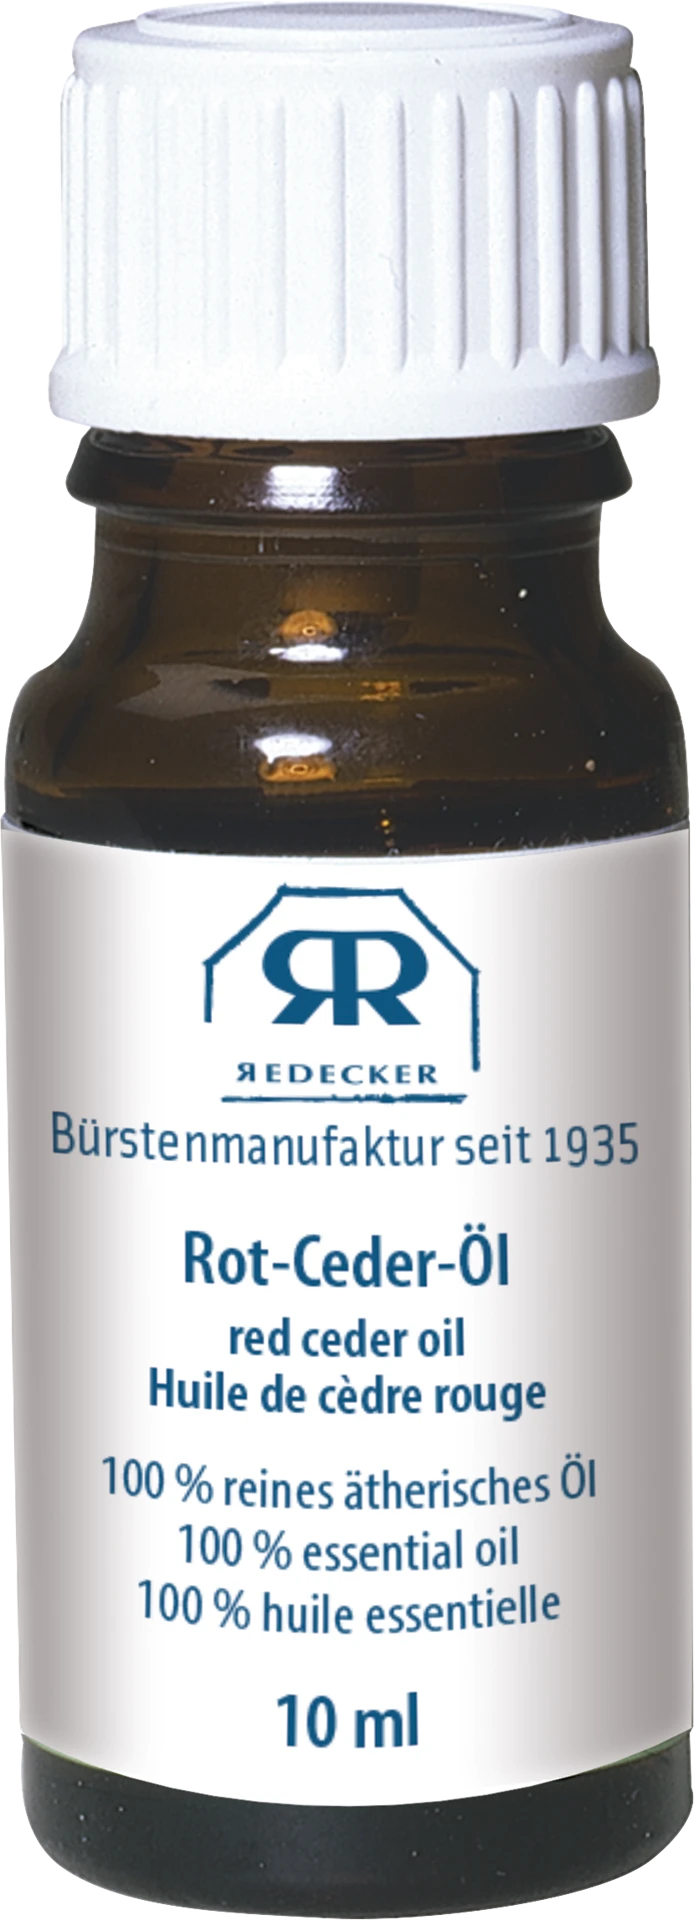 Rot-Ceder-Öl